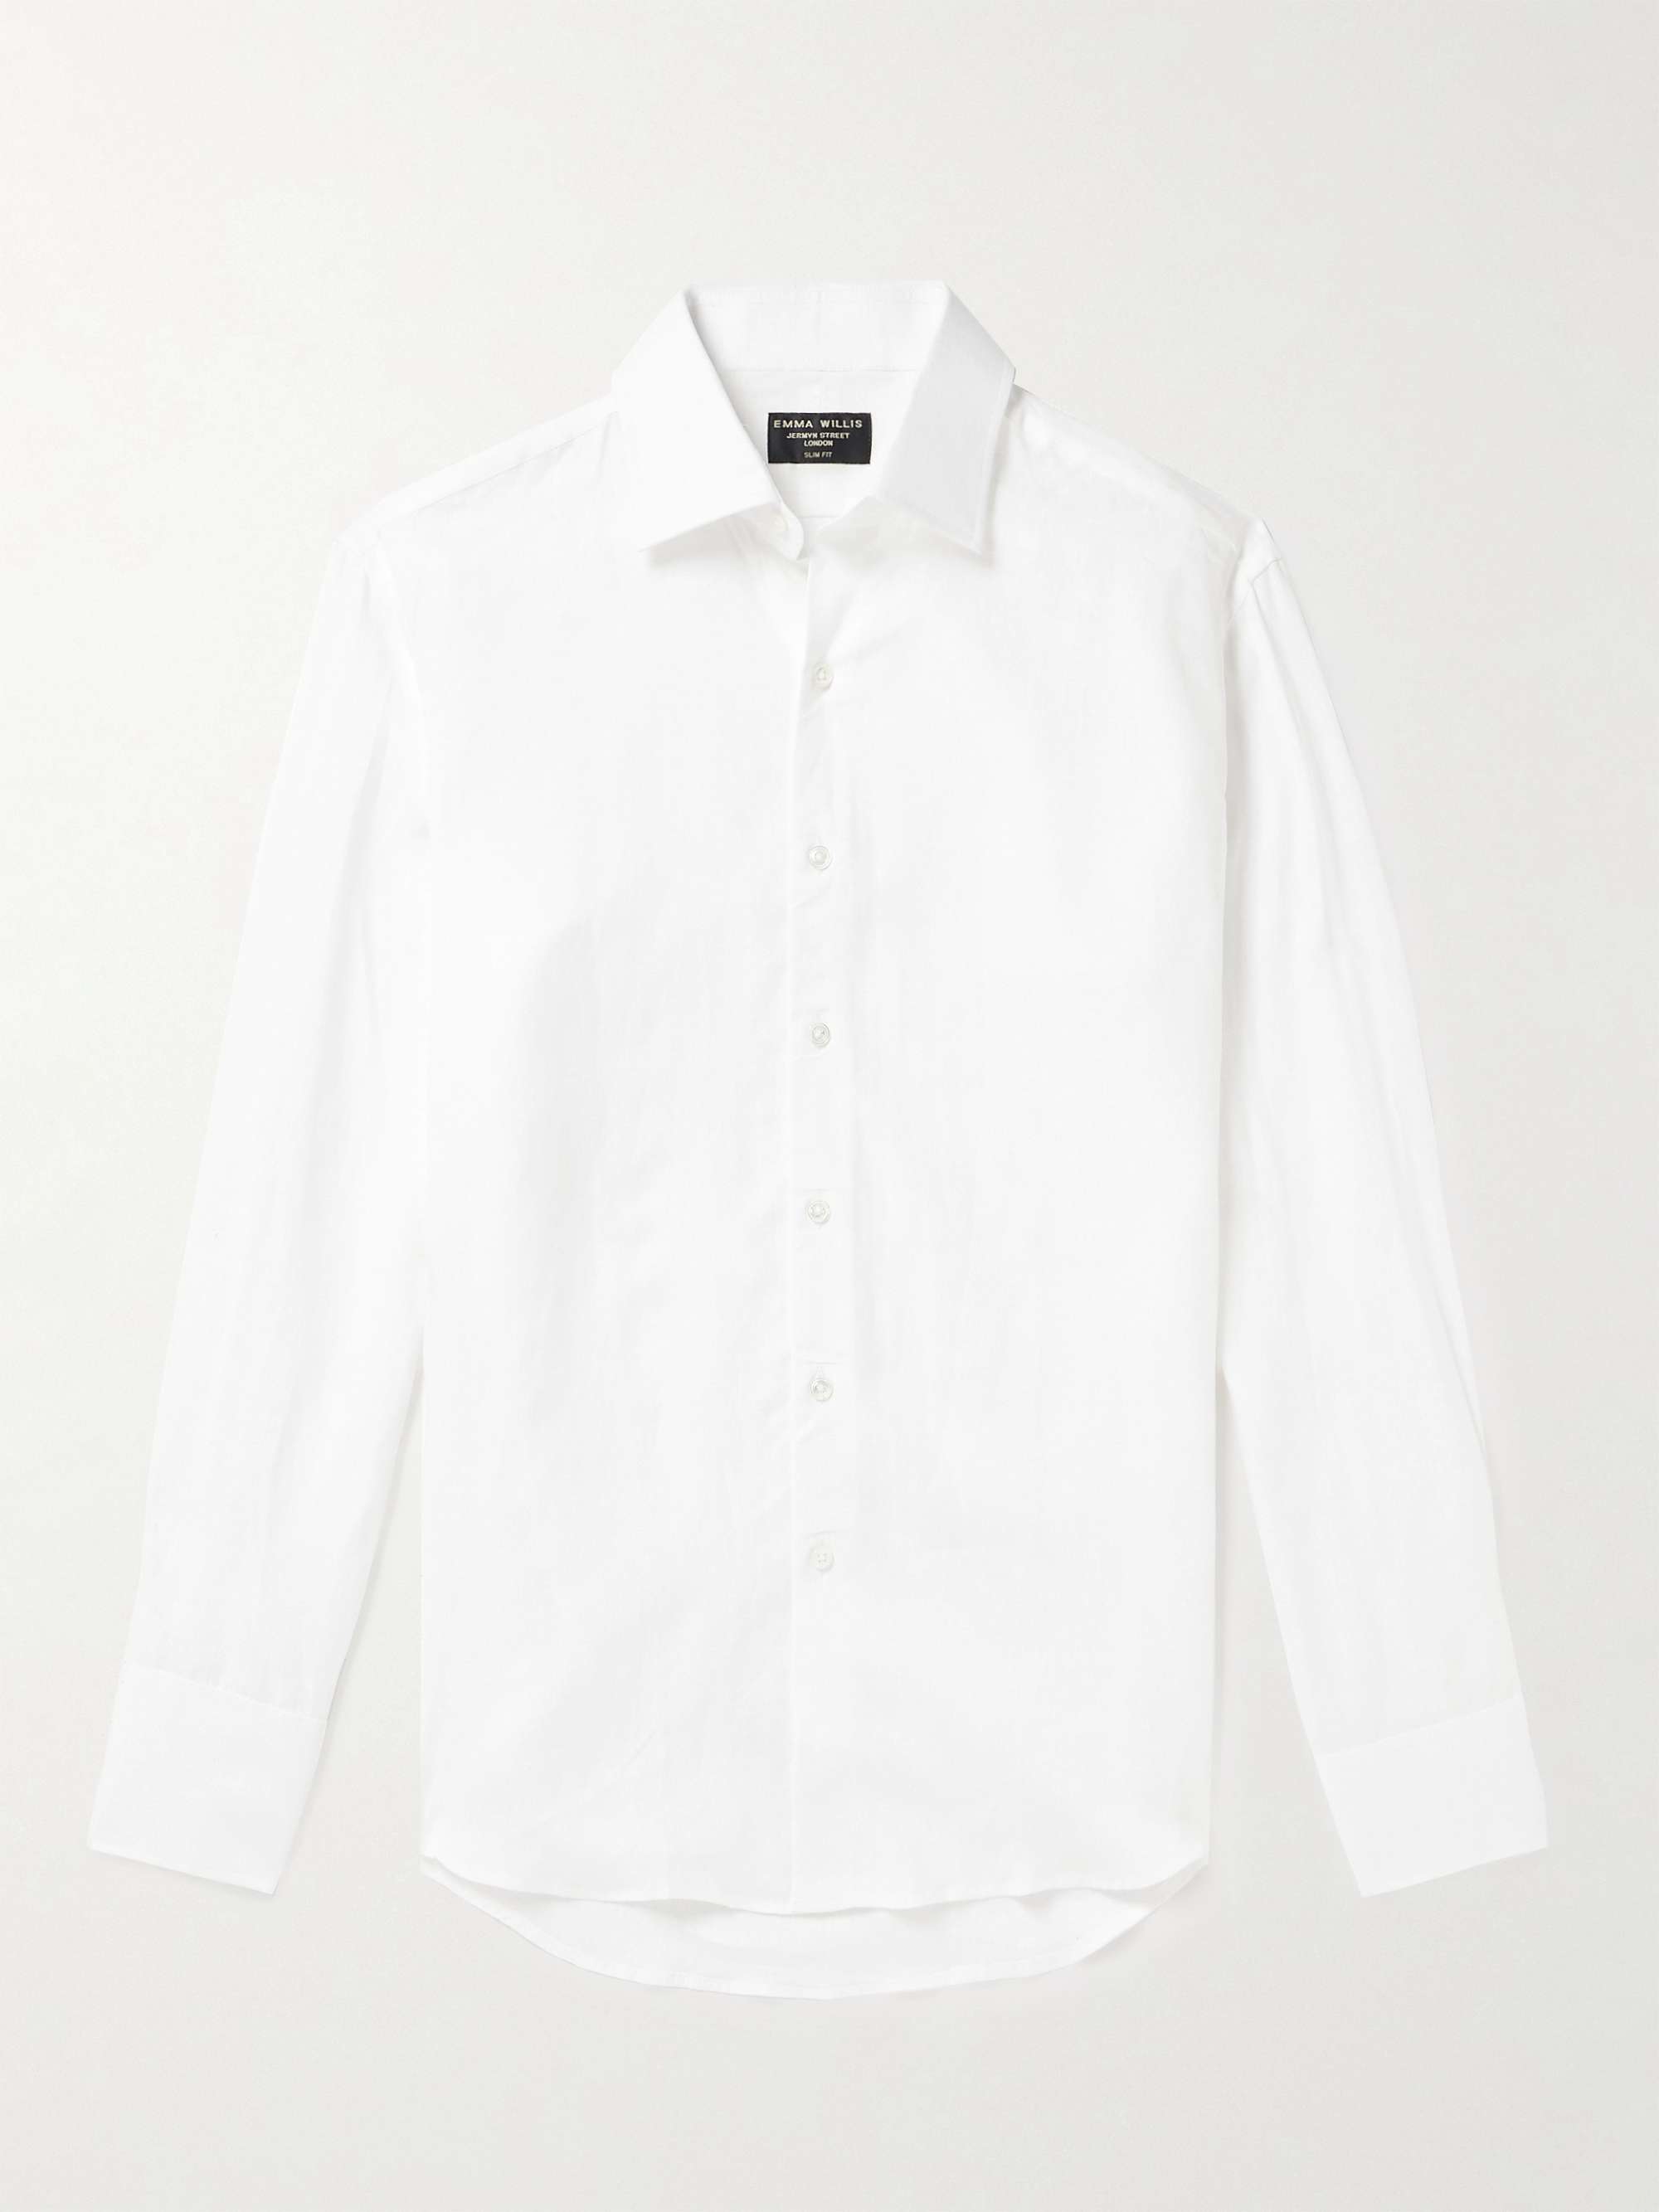 EMMA WILLIS Linen Shirt for Men | MR PORTER